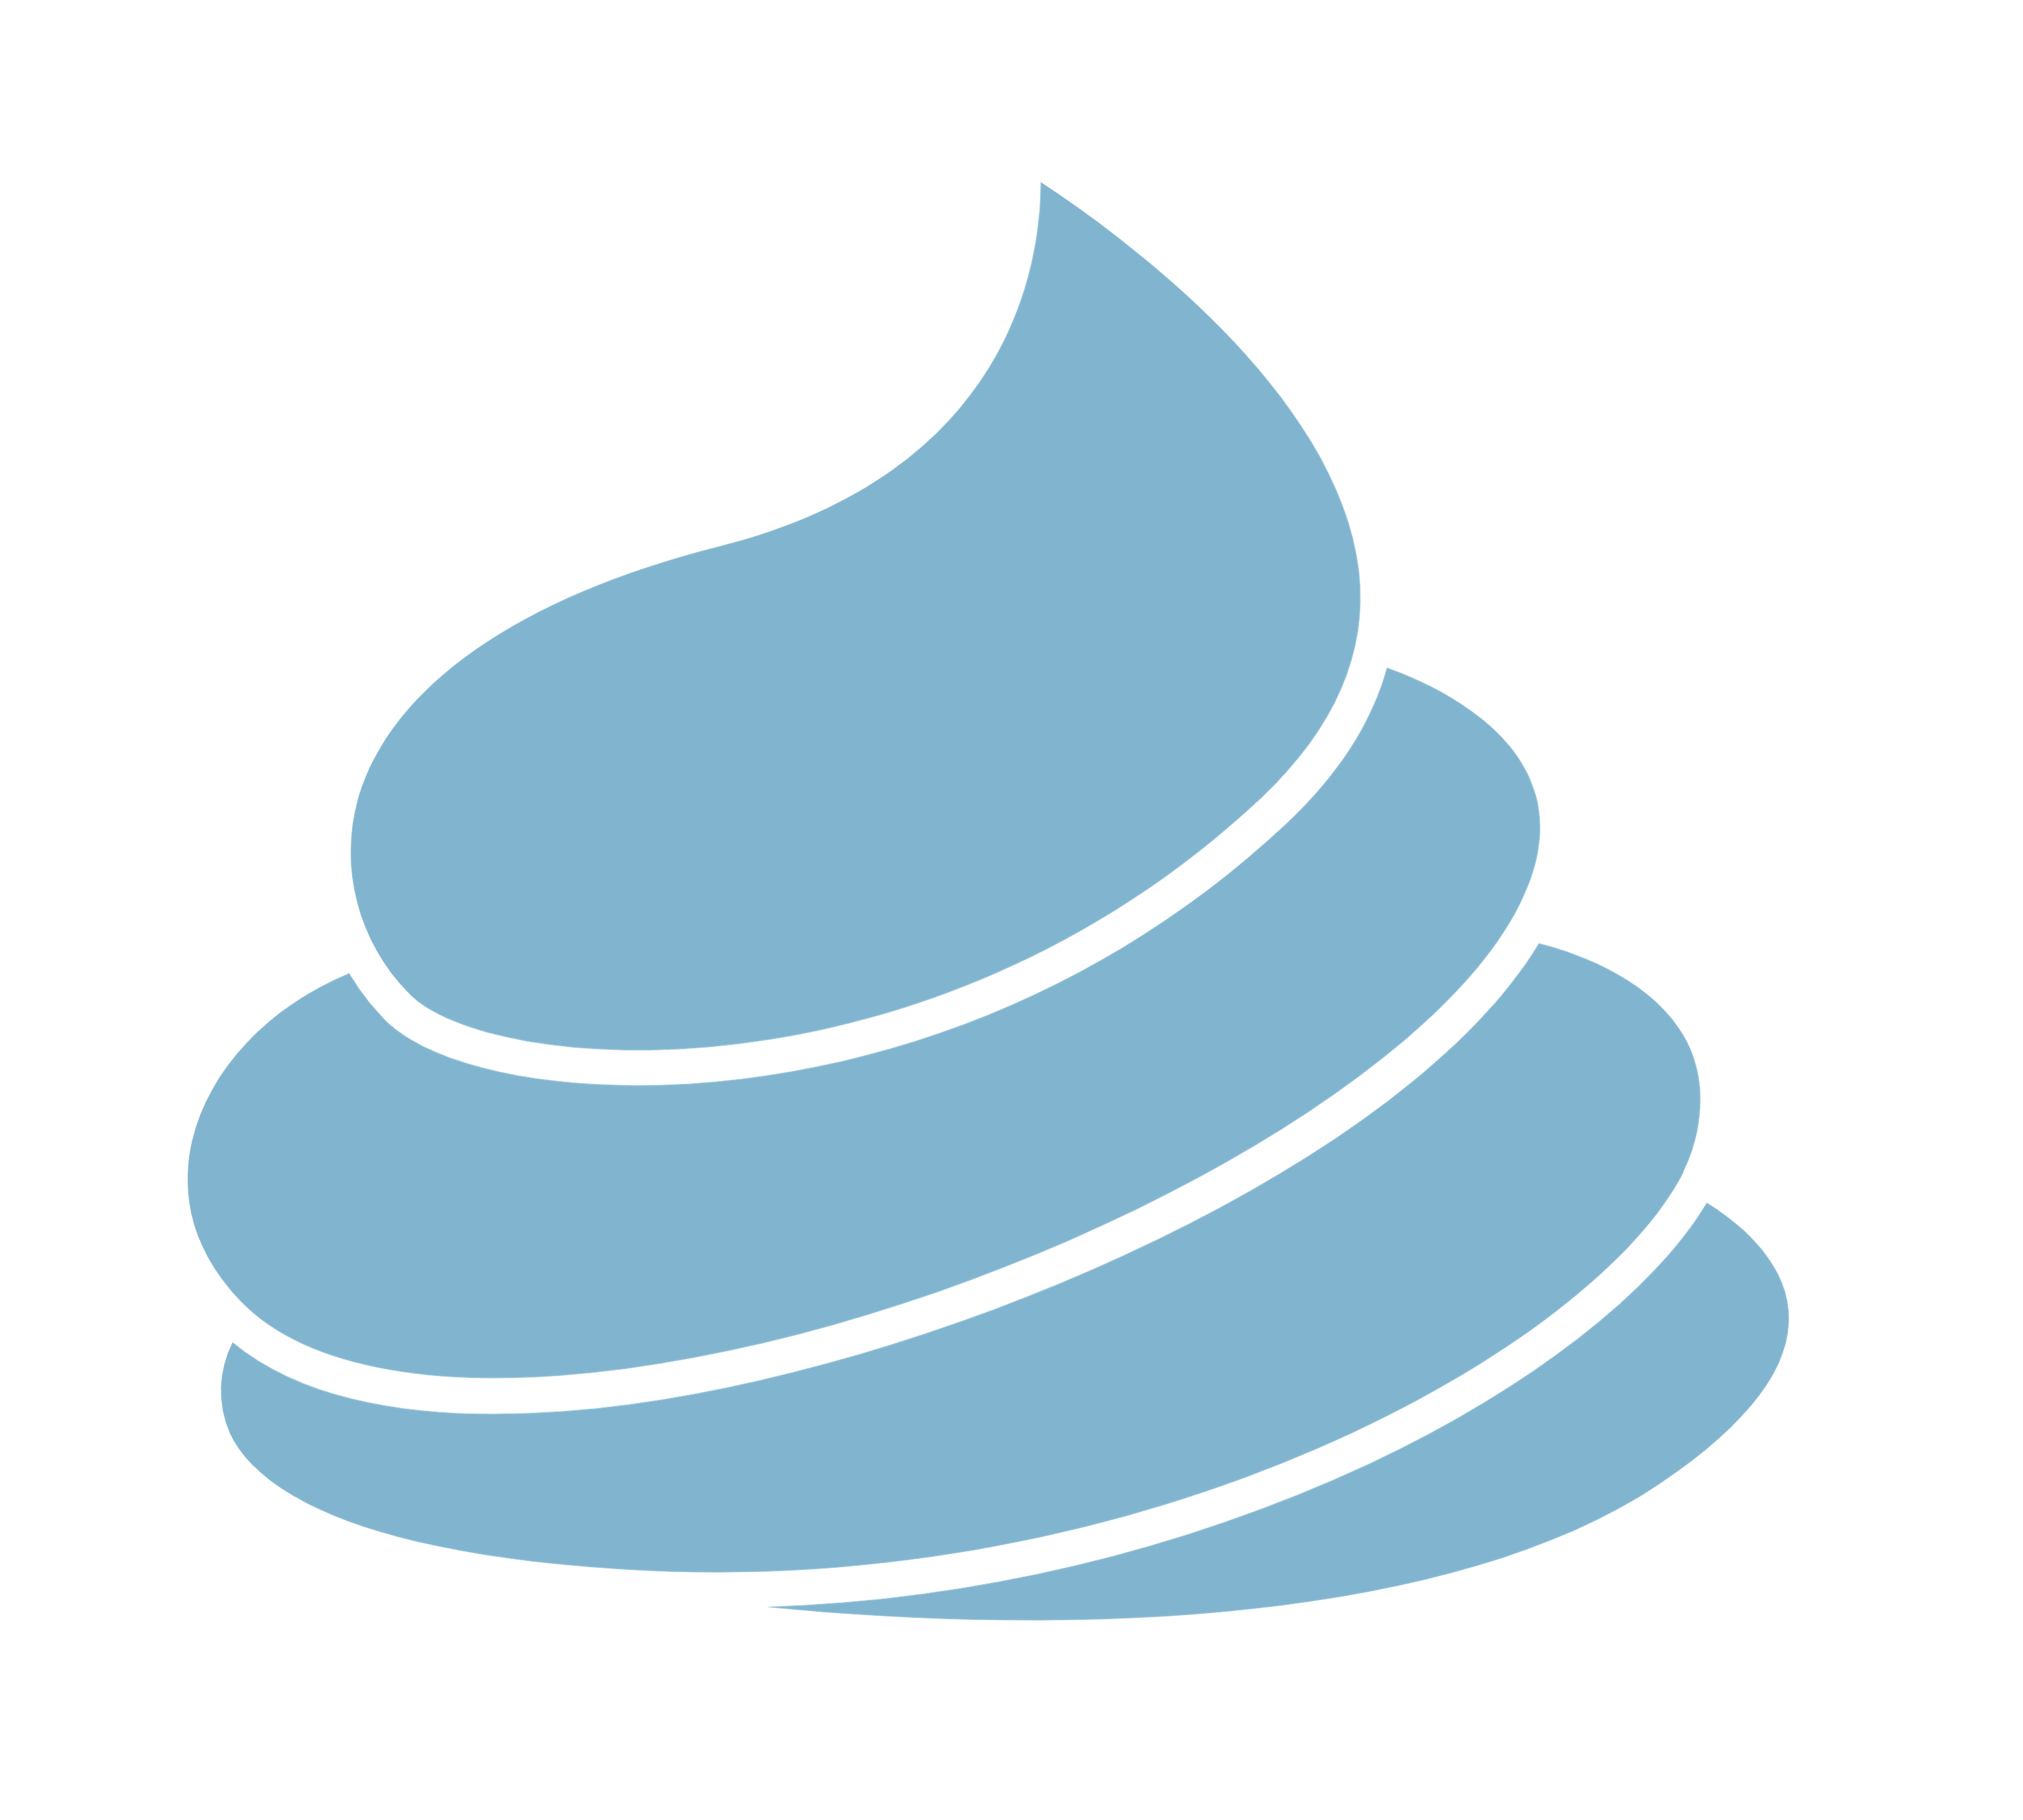 Swirl to represent dimethicone